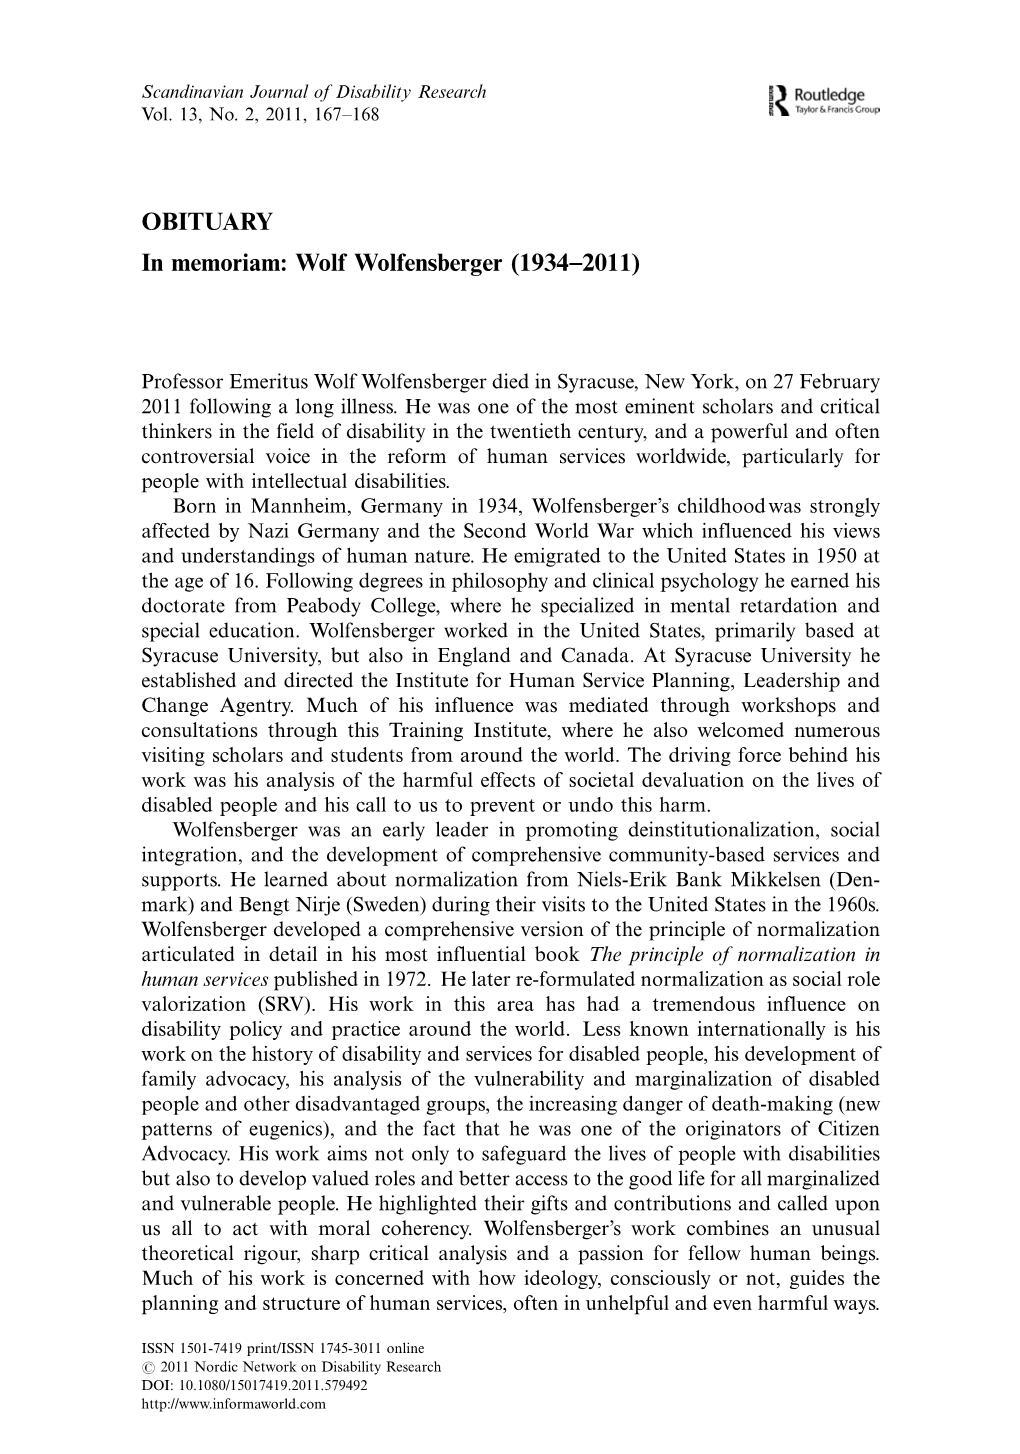 Wolf Wolfensberger (1934Á2011)